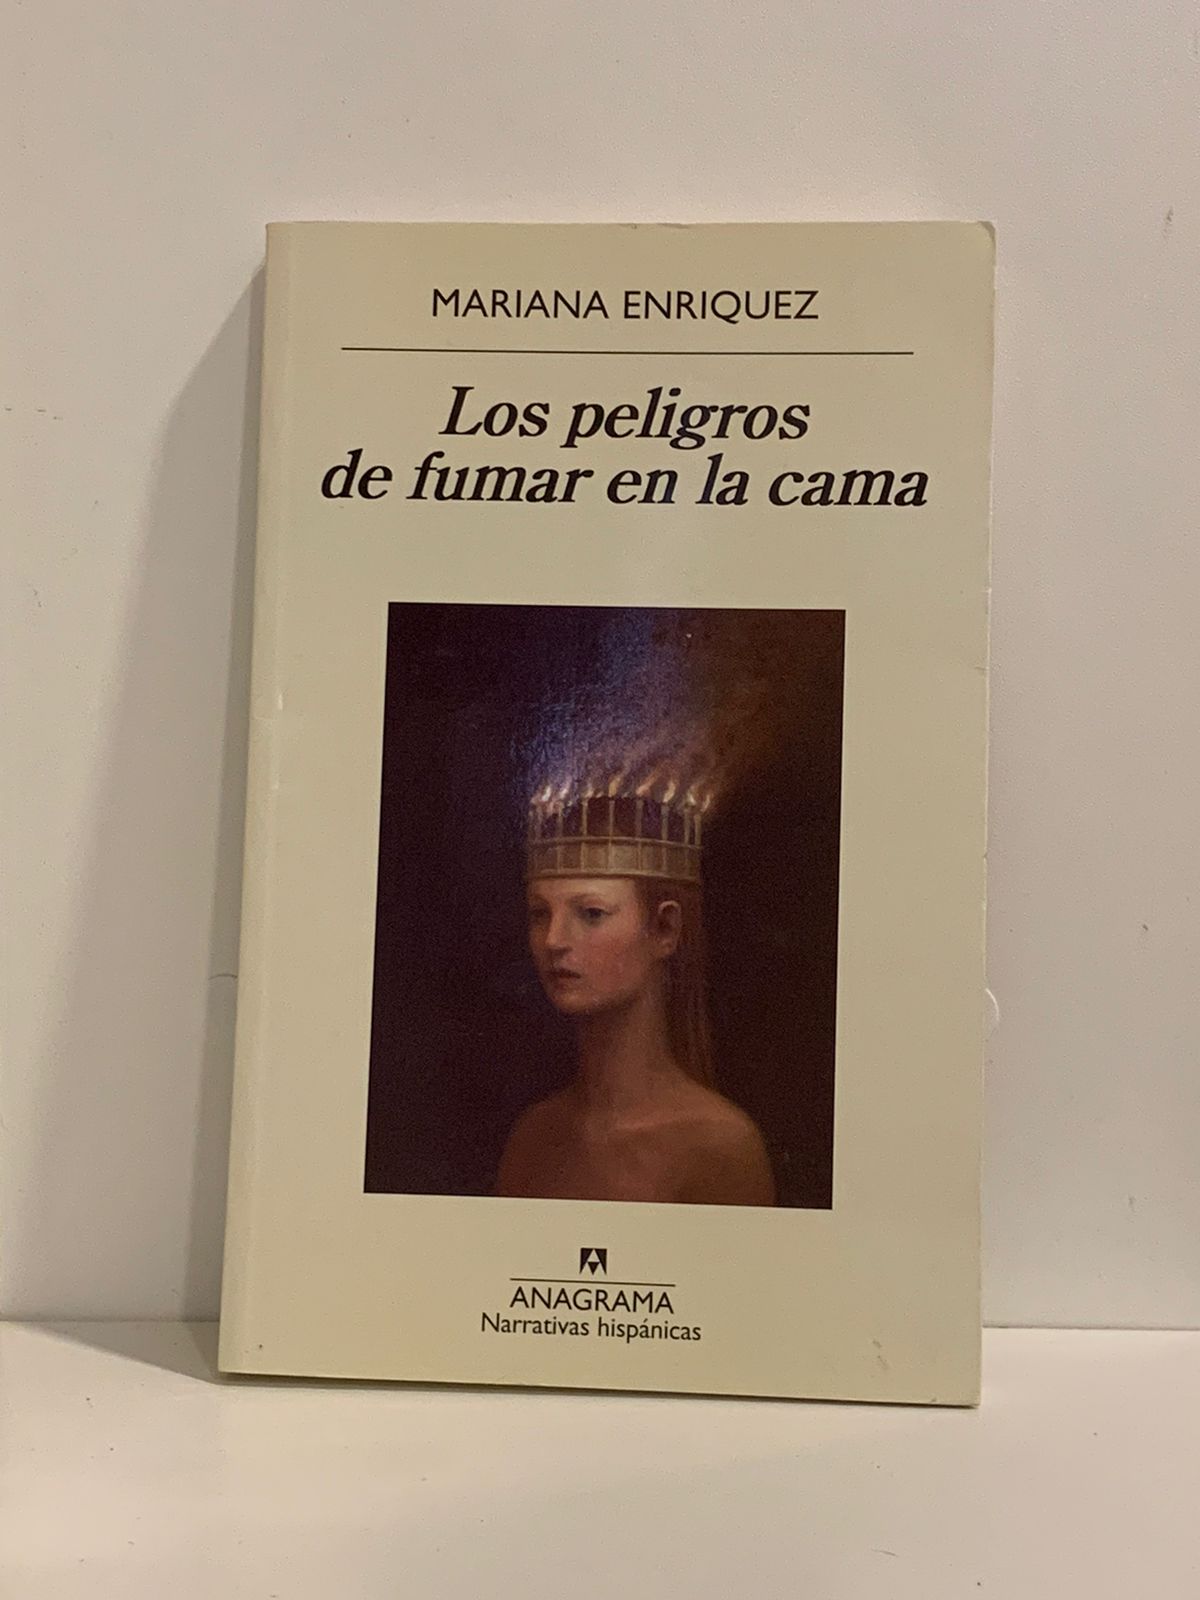 Mariana Enriquez - Los peligros de fumar en la cama